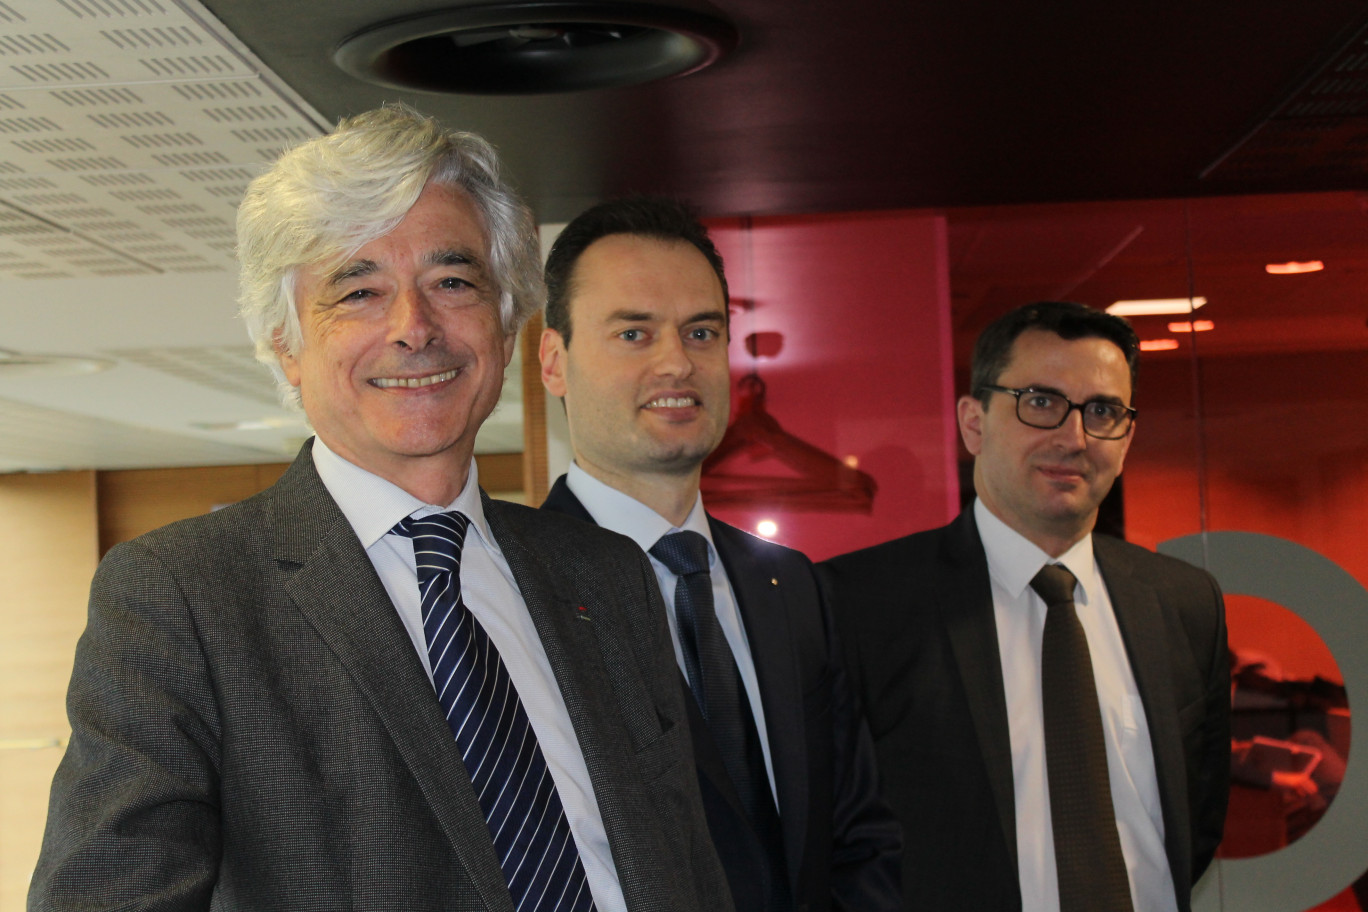 De gauche à droite Luc Doublet, président de Nord France Invest, Jan Demarez, gérant fondateur d’Aquafresh et  Yann Pitollet, directeur général de Nord France Invest.